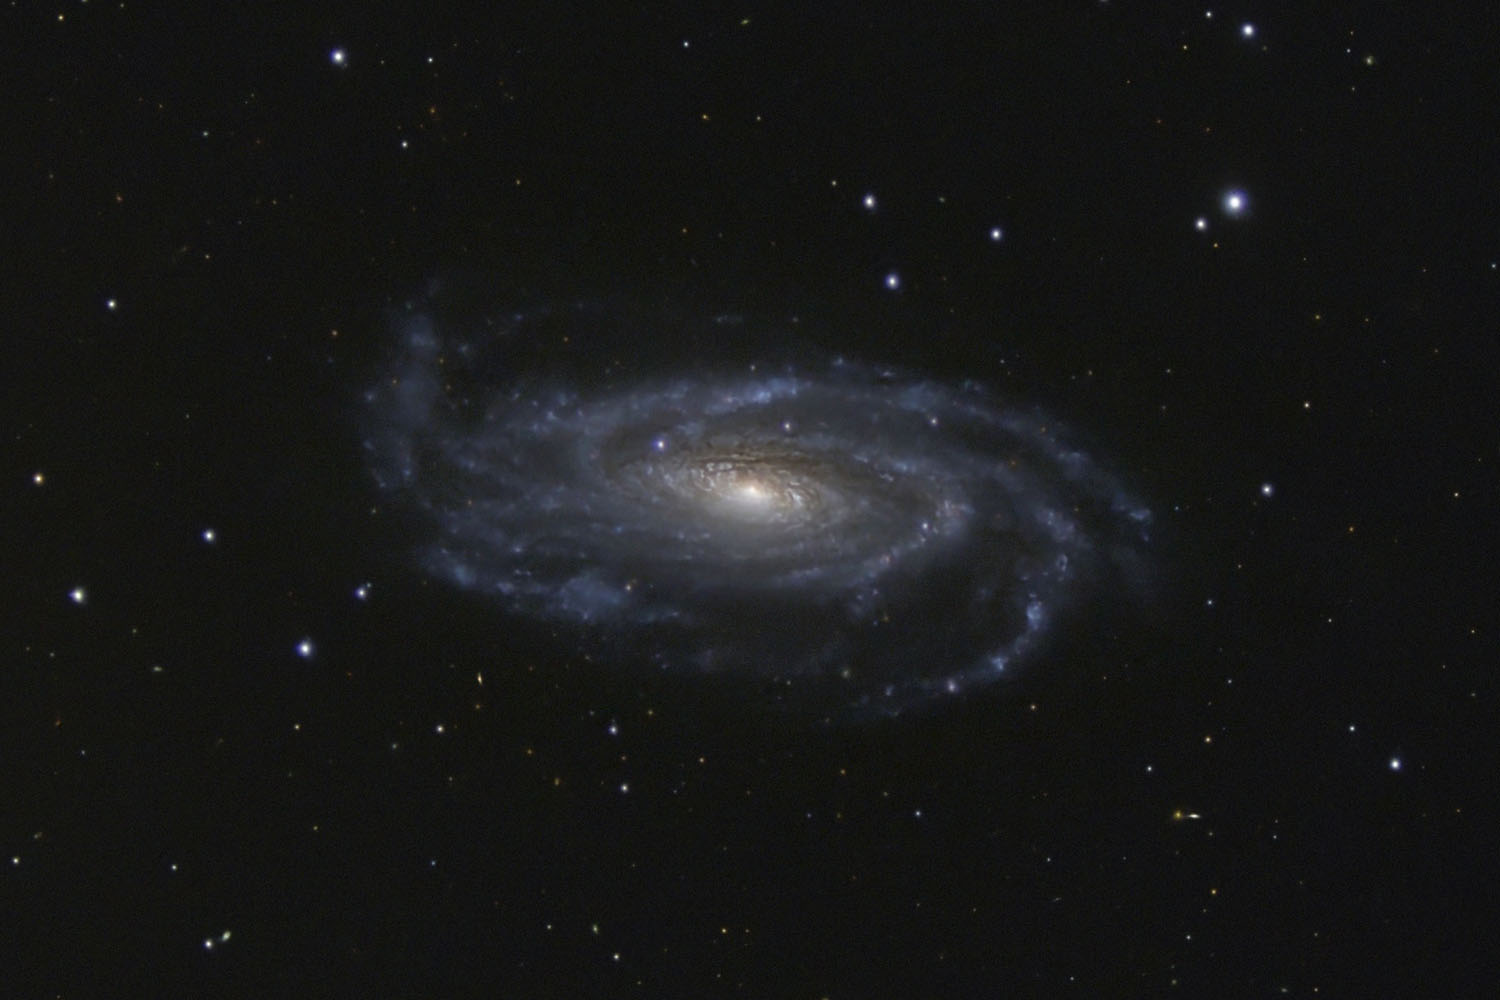 NGC5033